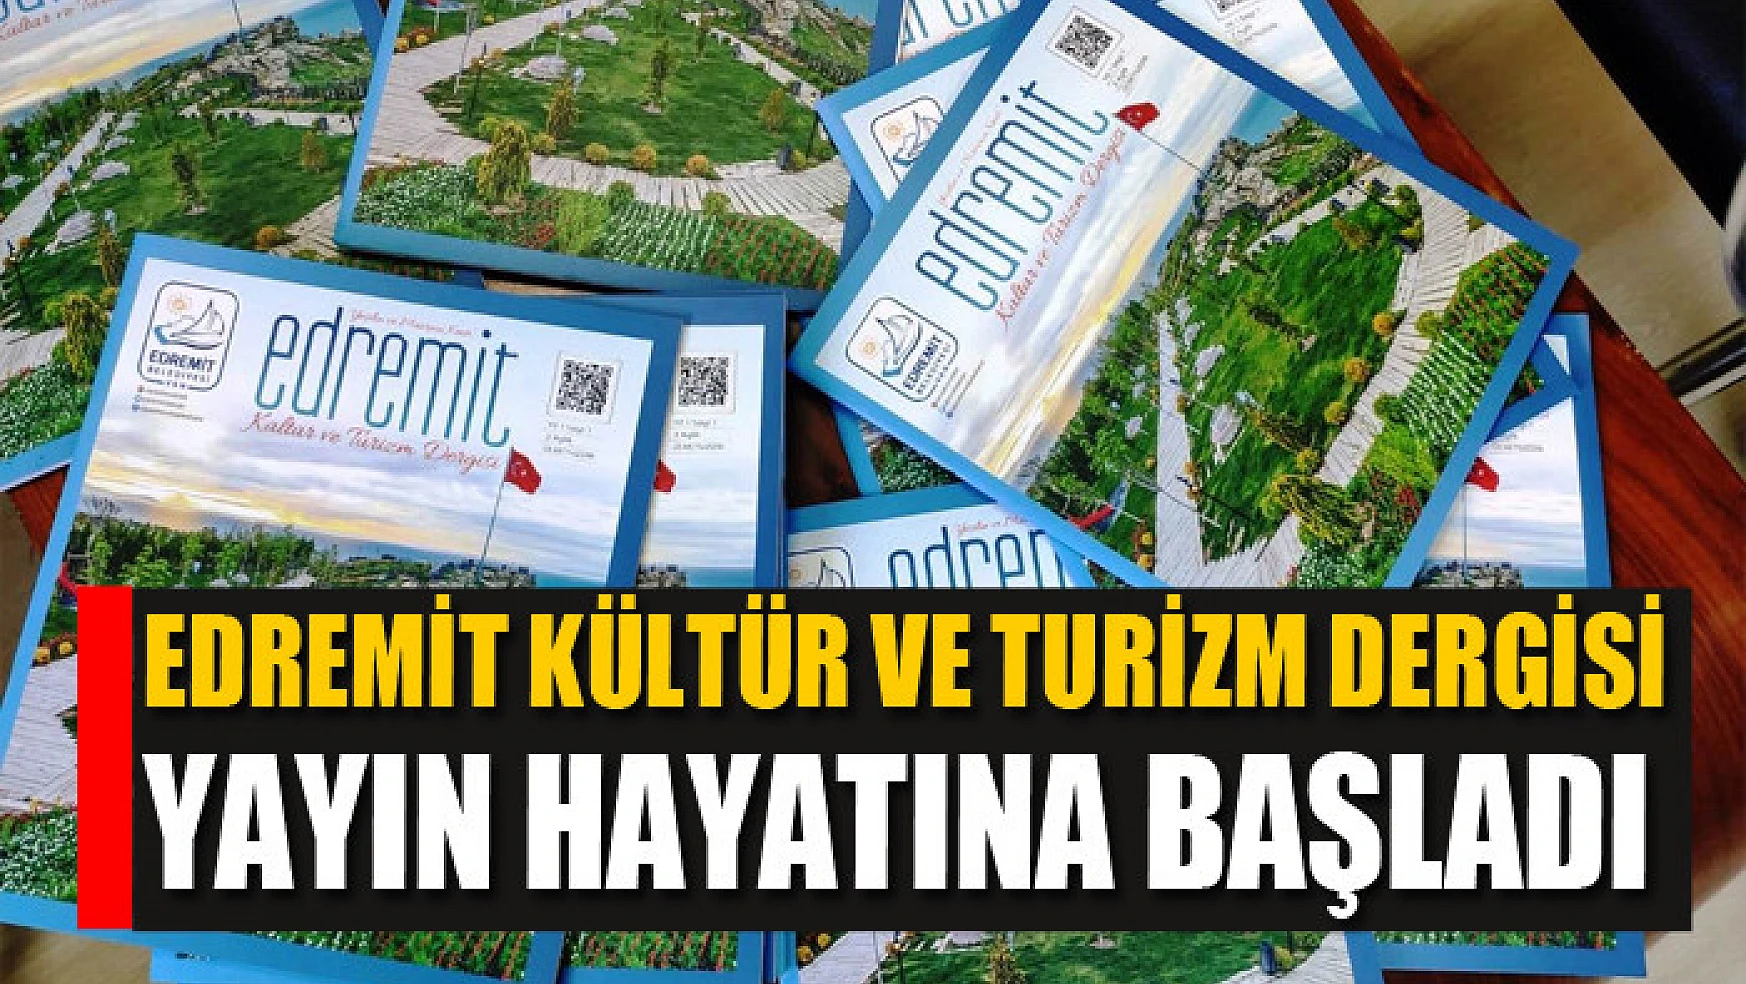 Edremit Kültür ve Turizm dergisi yayın hayatına başladı